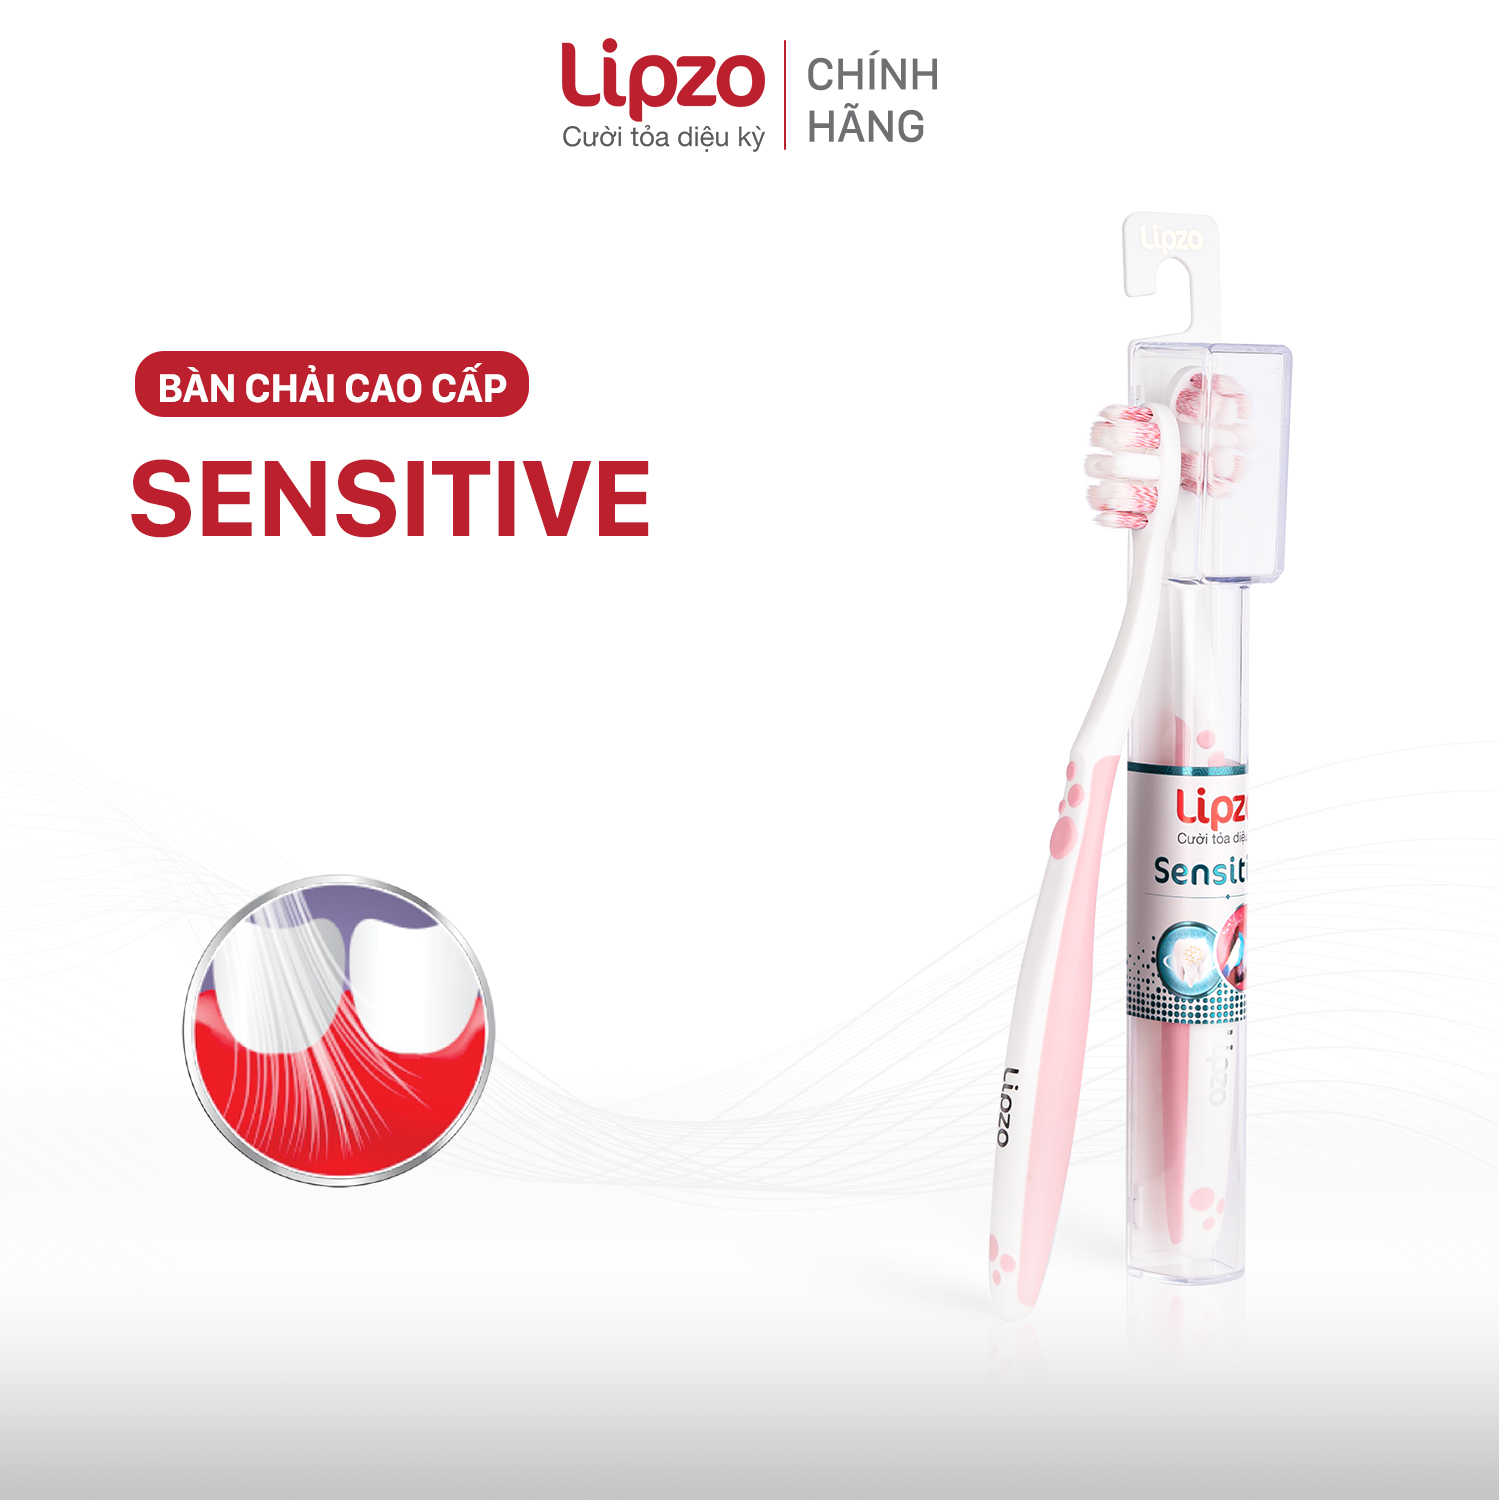 Bàn Chải Đánh Răng Lipzo Sensitive Cao Cấp Công Nghệ Chỉ Tơ Nha Khoa Kháng Khuẩn Dành Cho Răng Nhạy Cảm